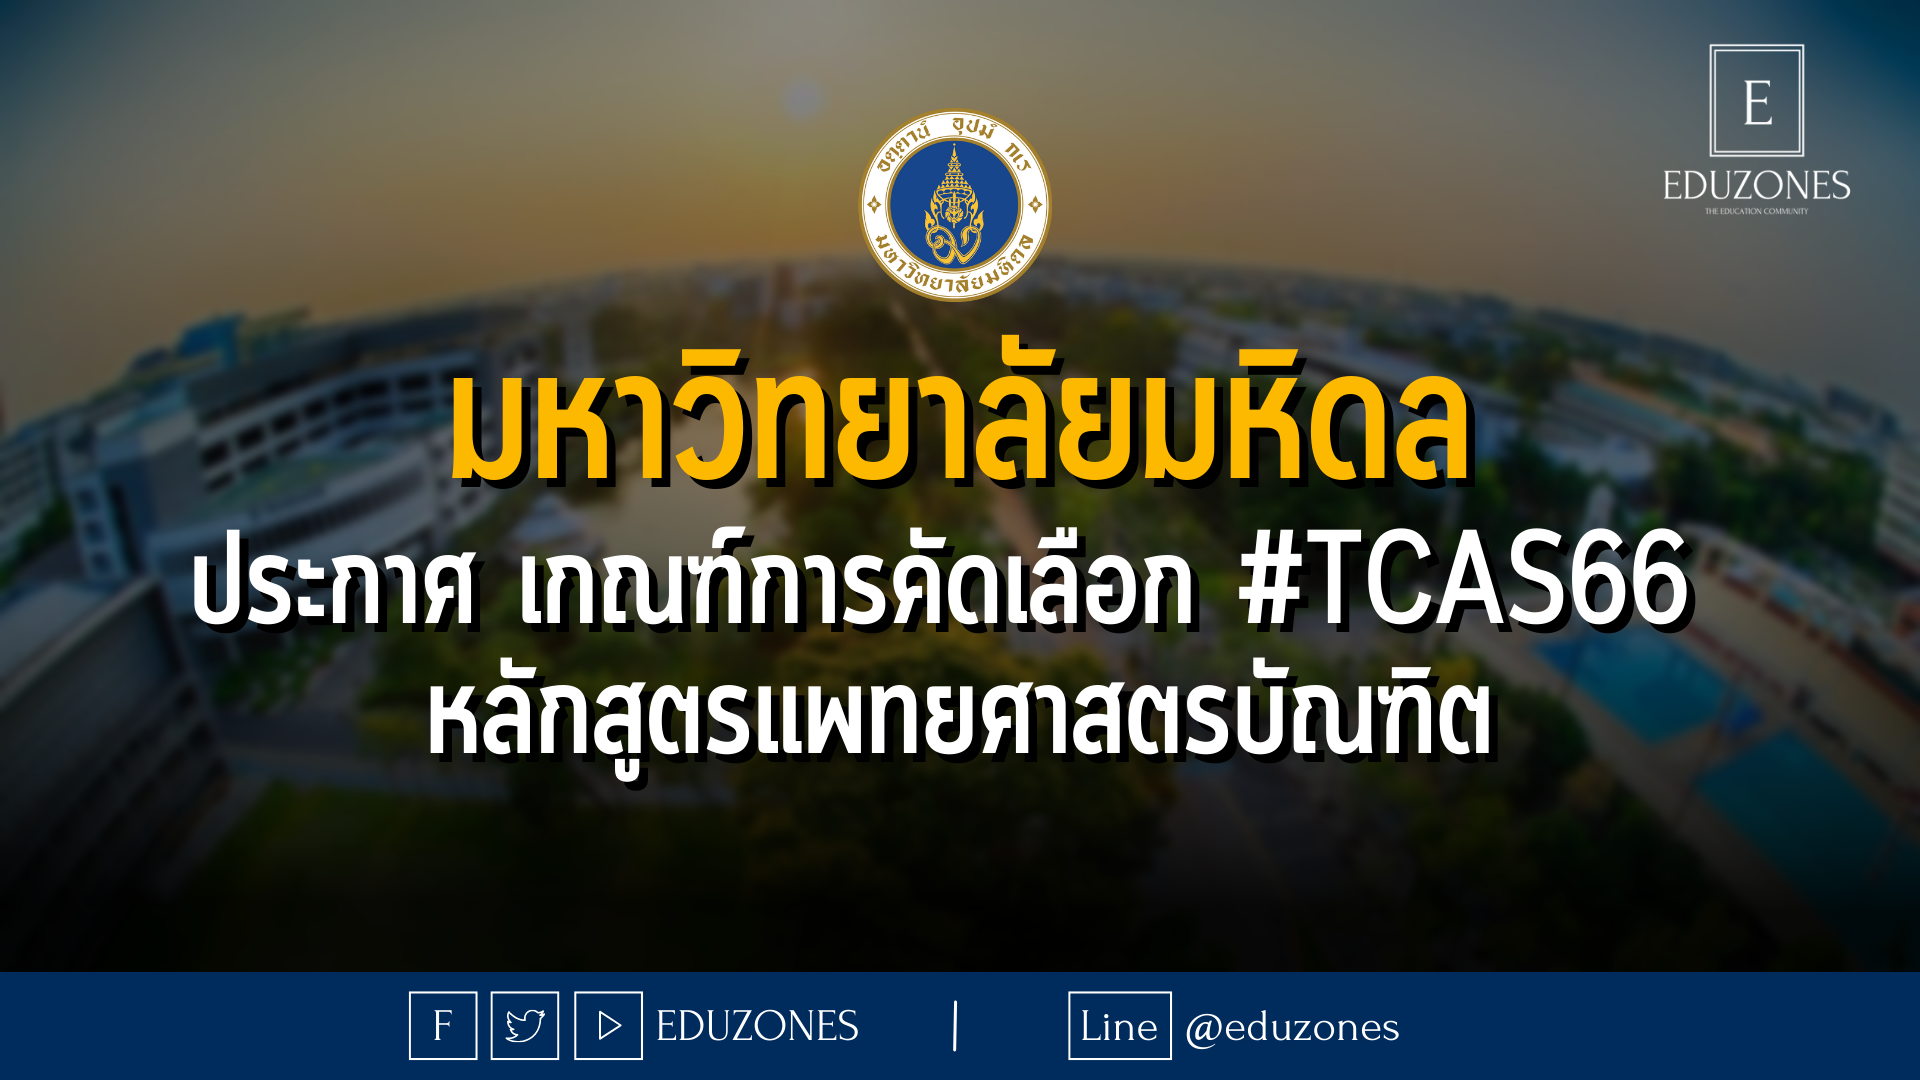 มหาวิทยาลัยมหิดล ประกาศ เกณฑ์การคัดเลือก #TCAS66 หลักสูตรแพทยศาสตรบัณฑิต